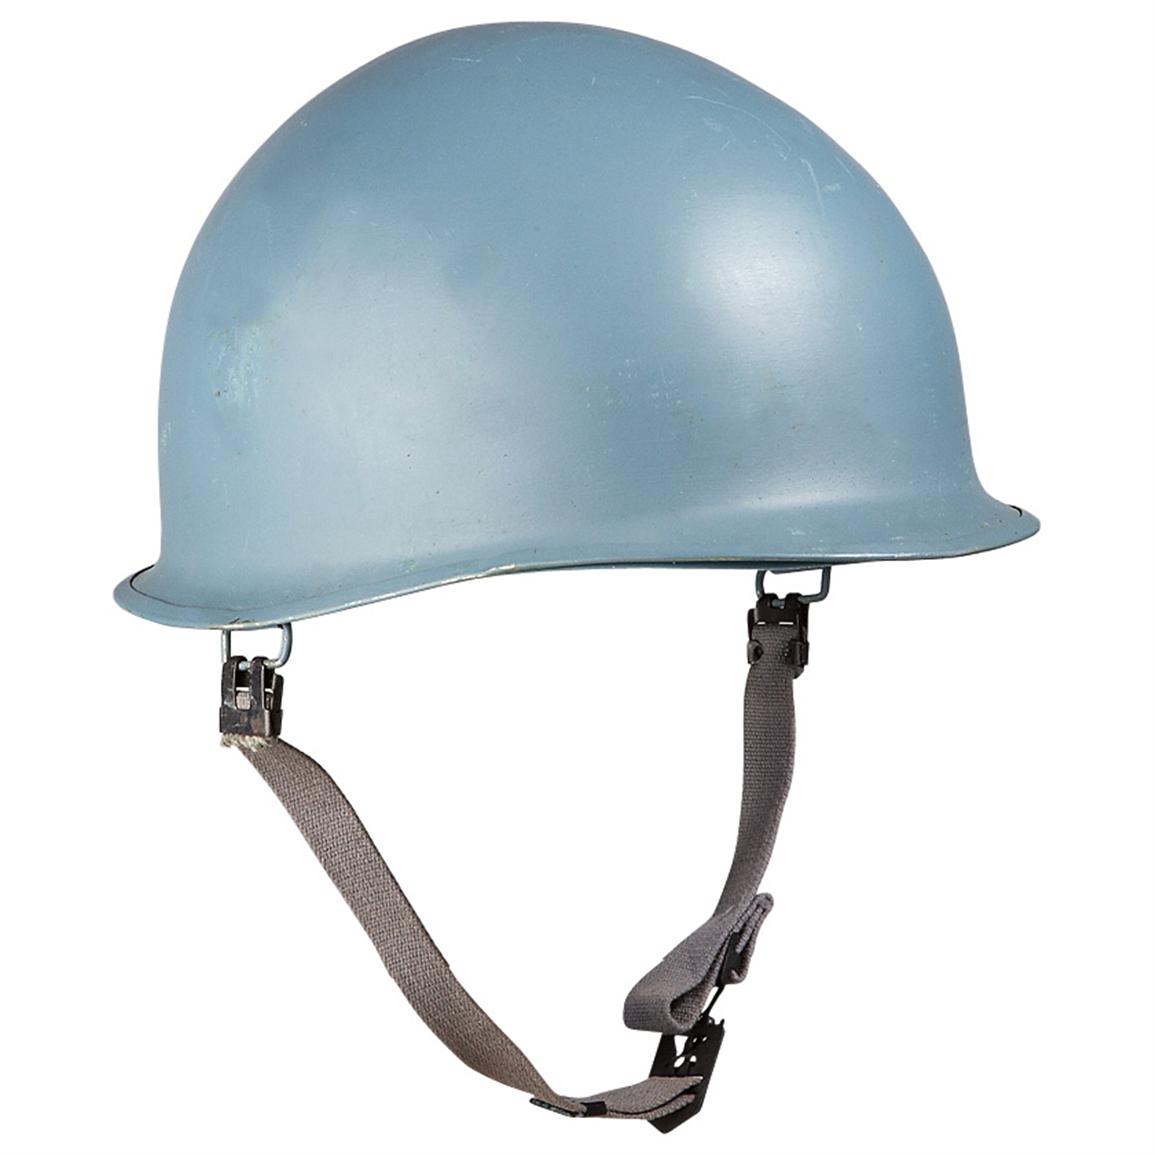 Belgian Military Surplus UN Helmet with Liner, New